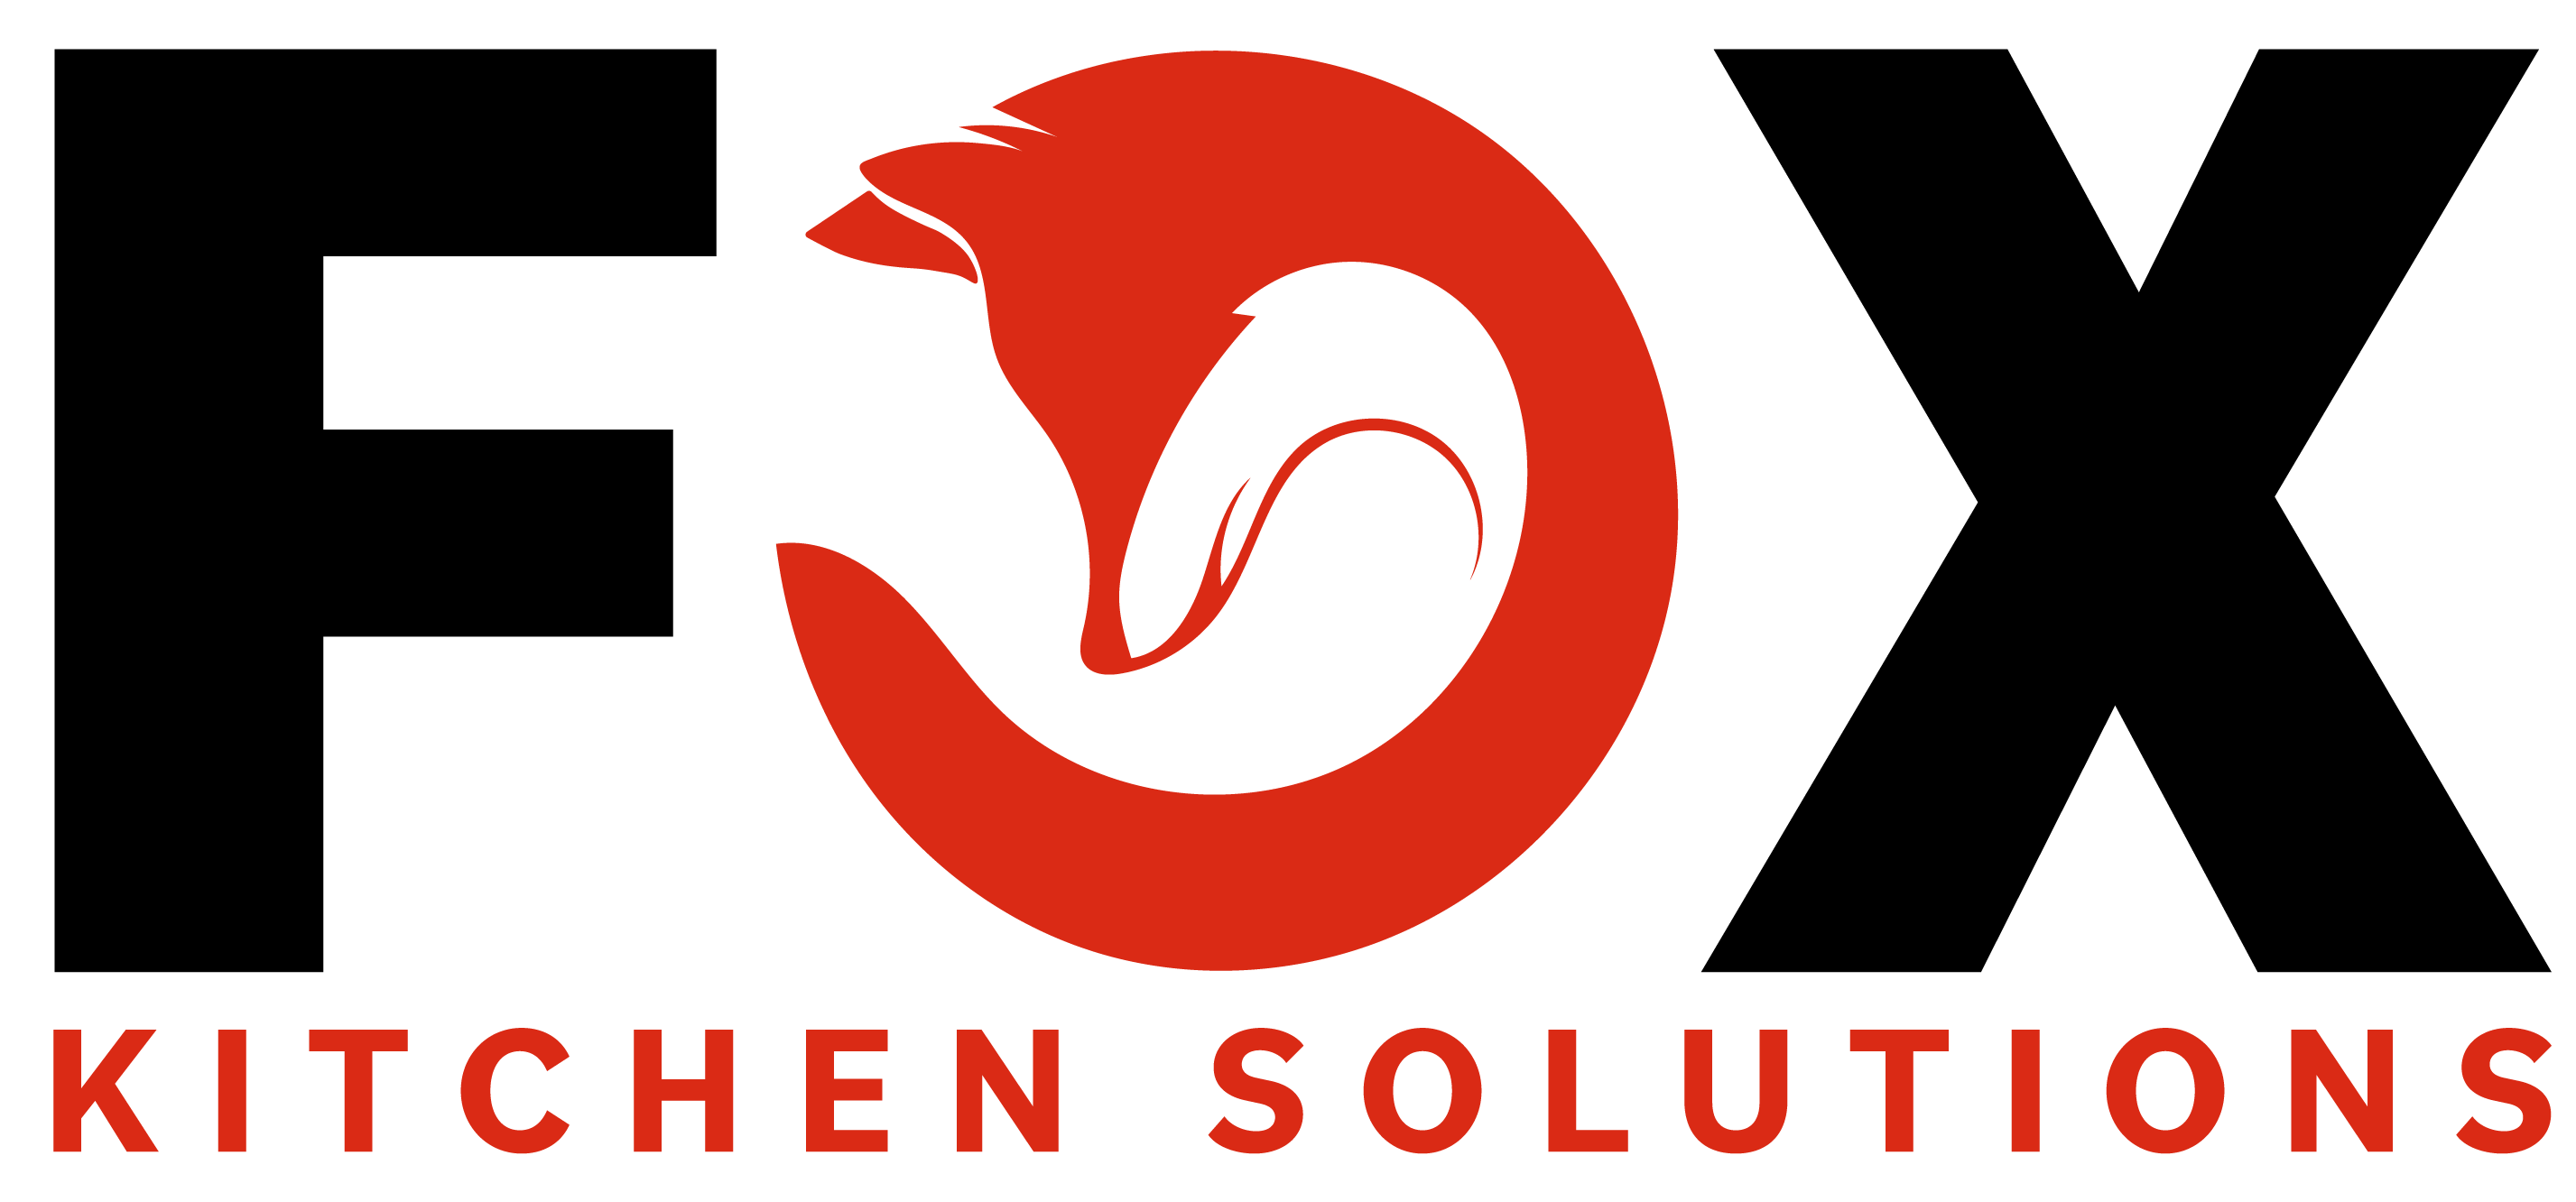 Fox Kitchen Solutions